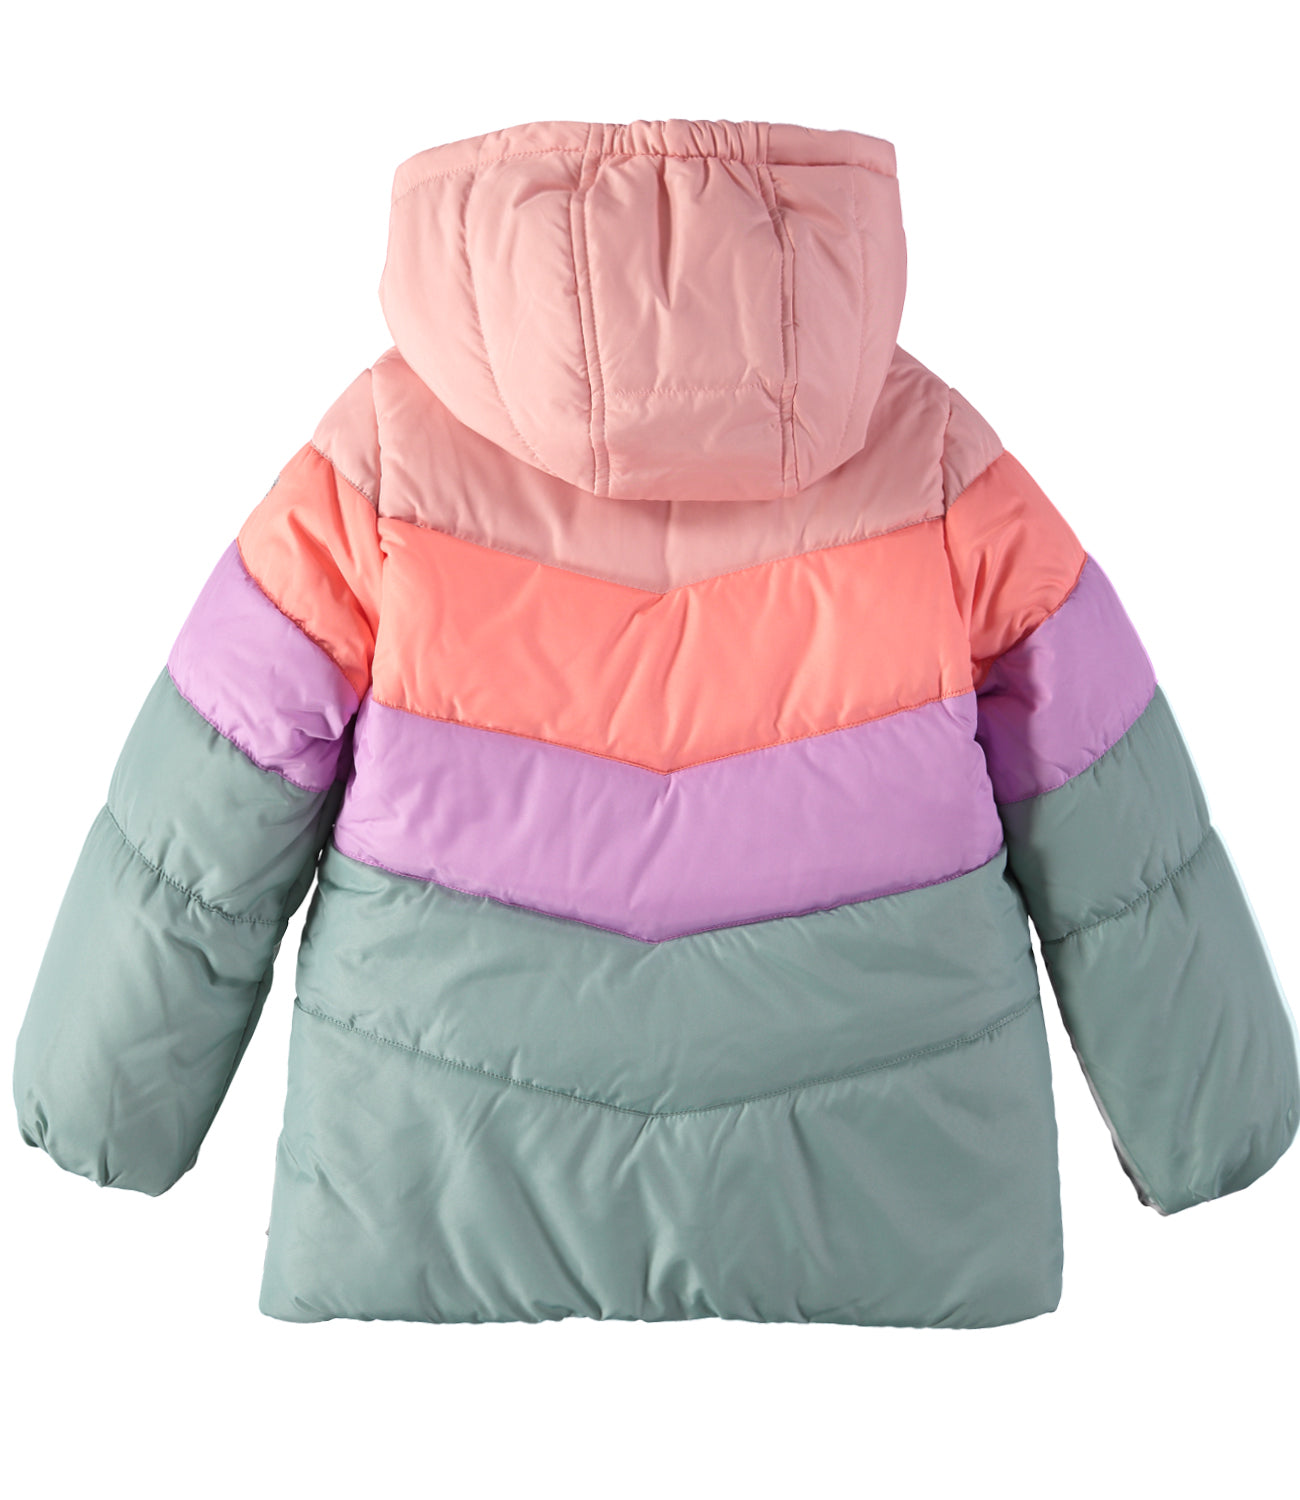 Osh Kosh Girls 2T-6X Colorblock Puffer Jacket